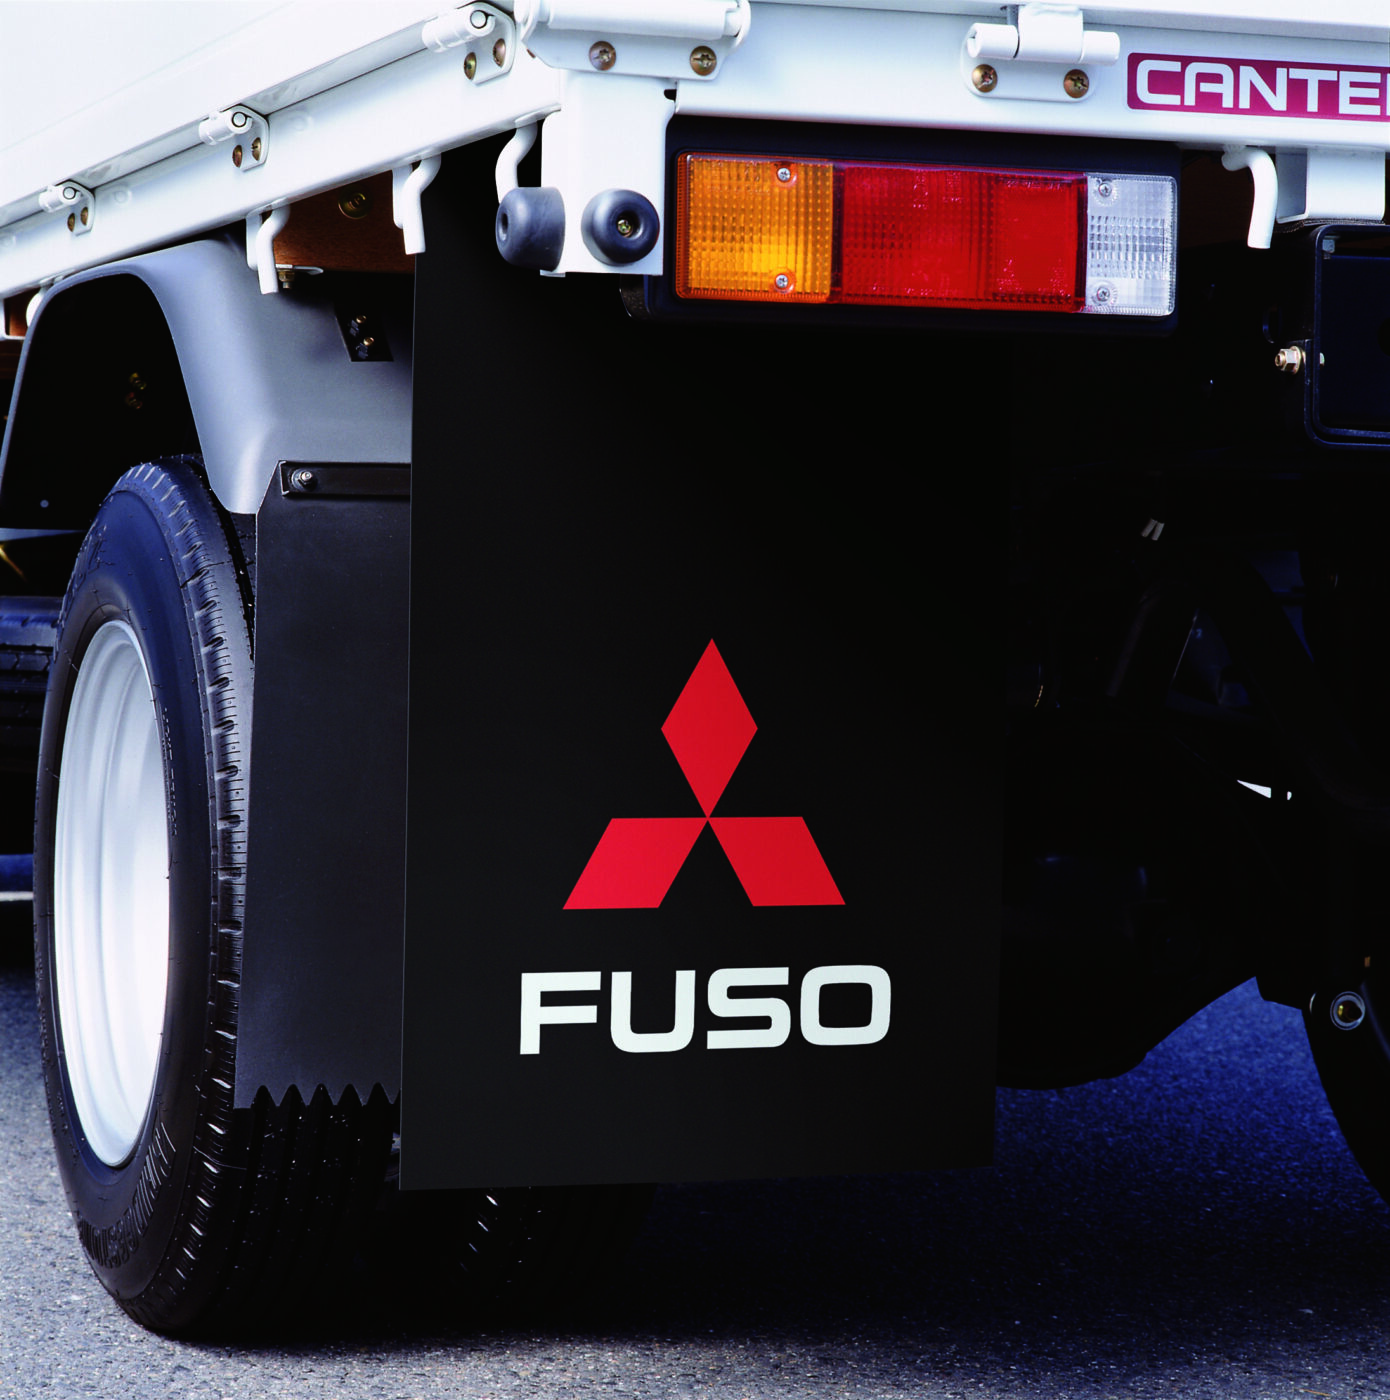 De FUSO vuilvangers beschermen het voertuig, de passagiers, andere voertuigen en voetgangers tegen modder en vuil dat door de banden wordt opgeworpen.